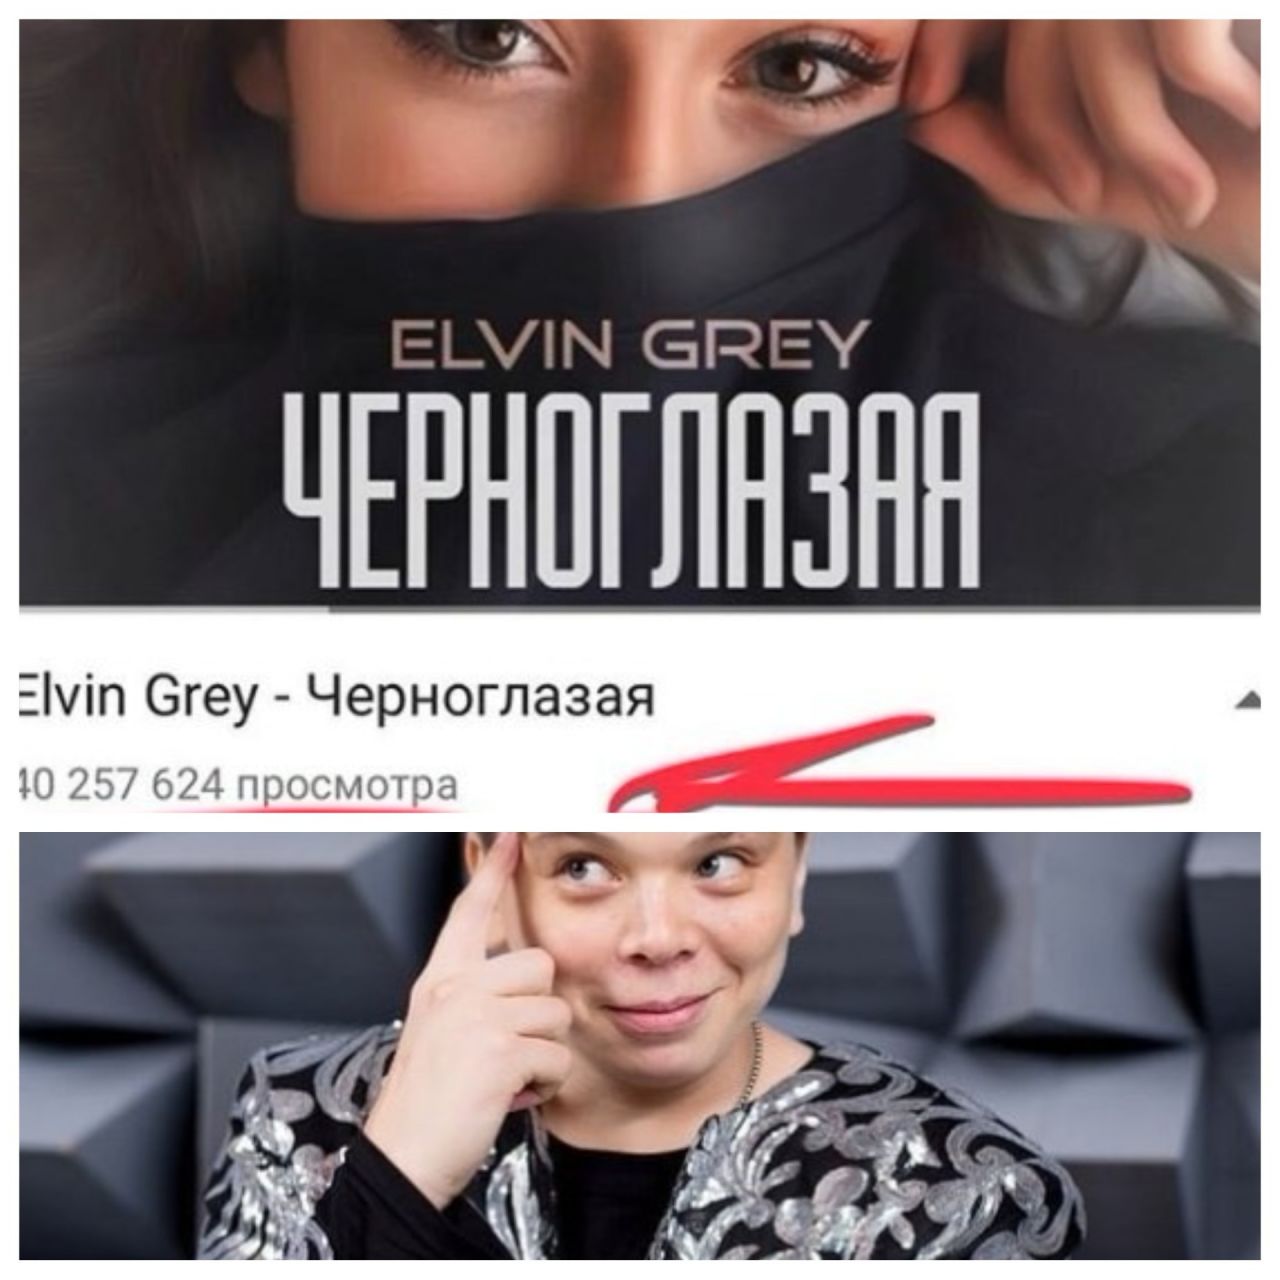 Элвин Грейның "Черноглазая" җырын youtube сайтында кырык миллион тапкыр тыңлаганнар